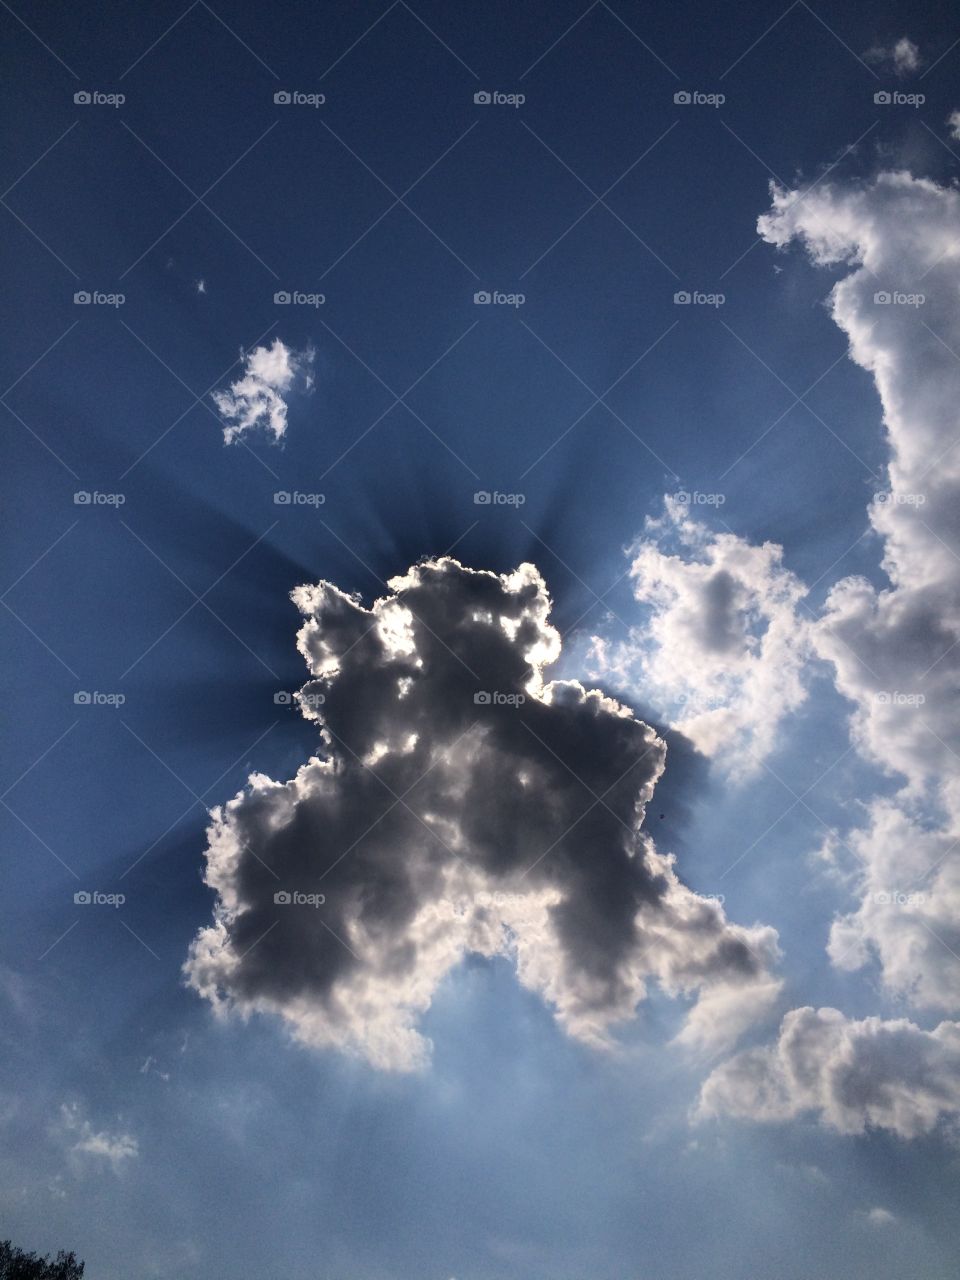 Cloud Watching